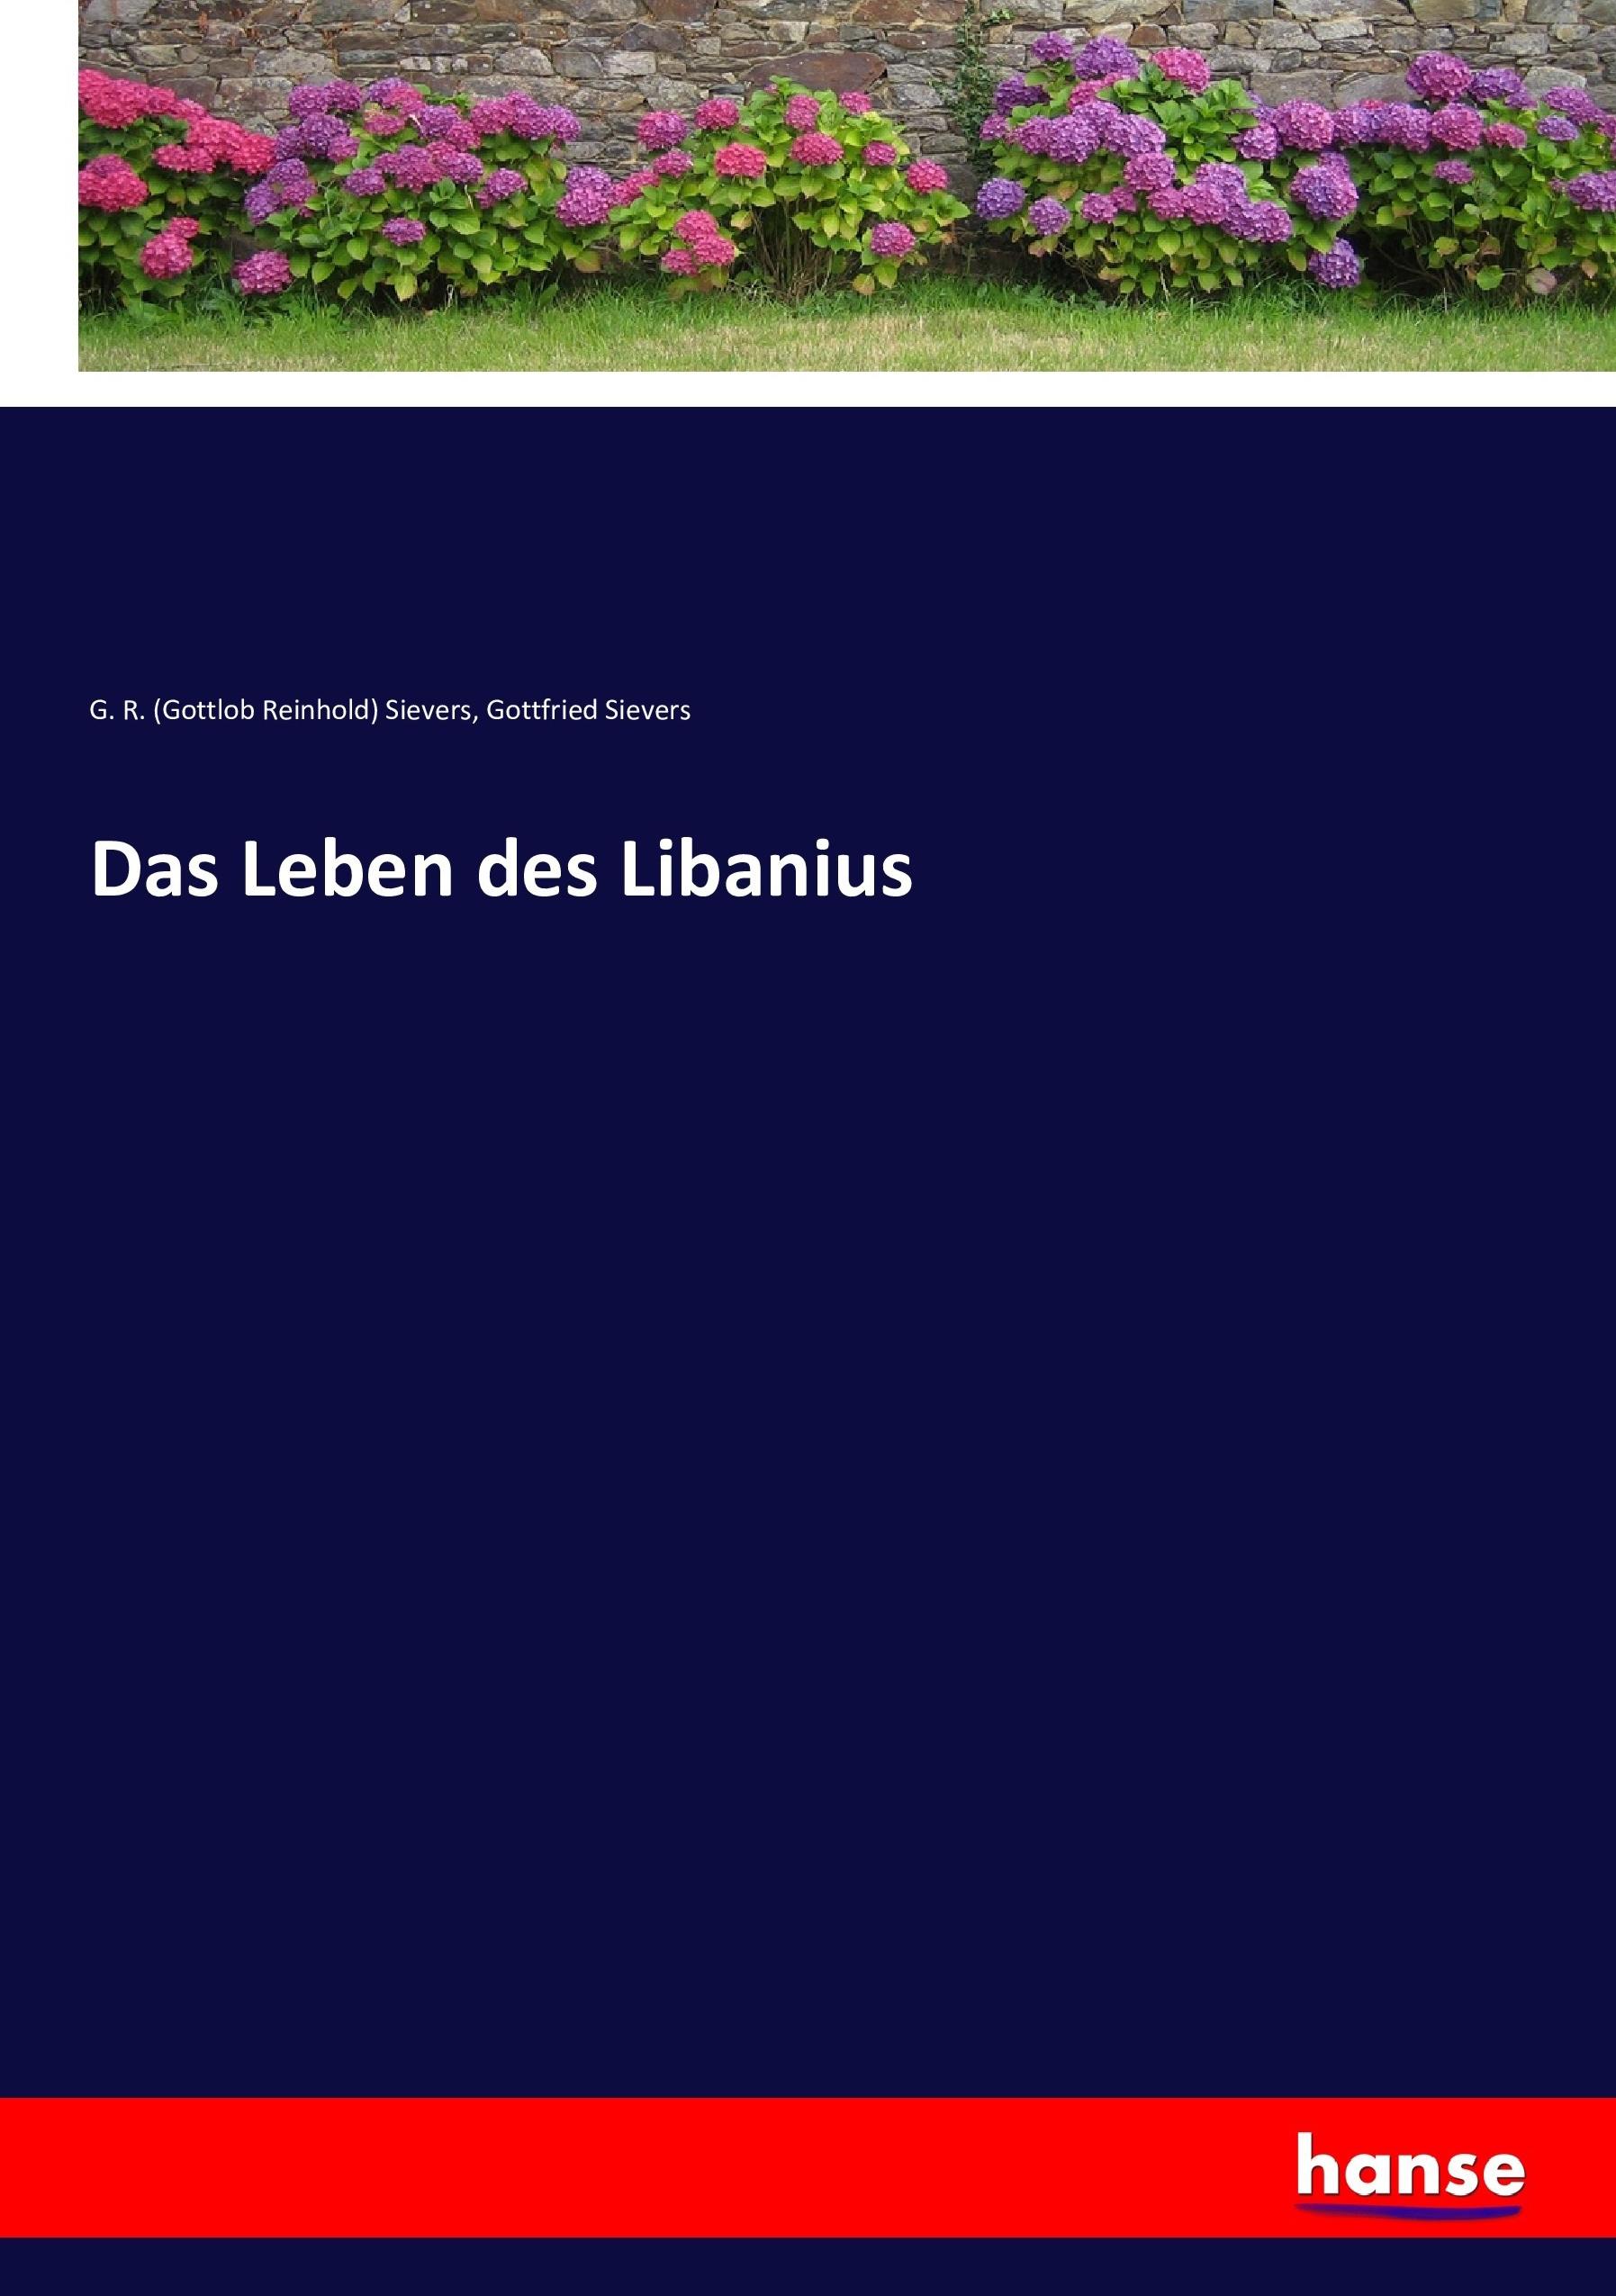 Das Leben des Libanius  G. R. Sievers (u. a.)  Taschenbuch  Paperback  Deutsch  2017 - Sievers, G. R. (Gottlob Reinhold)